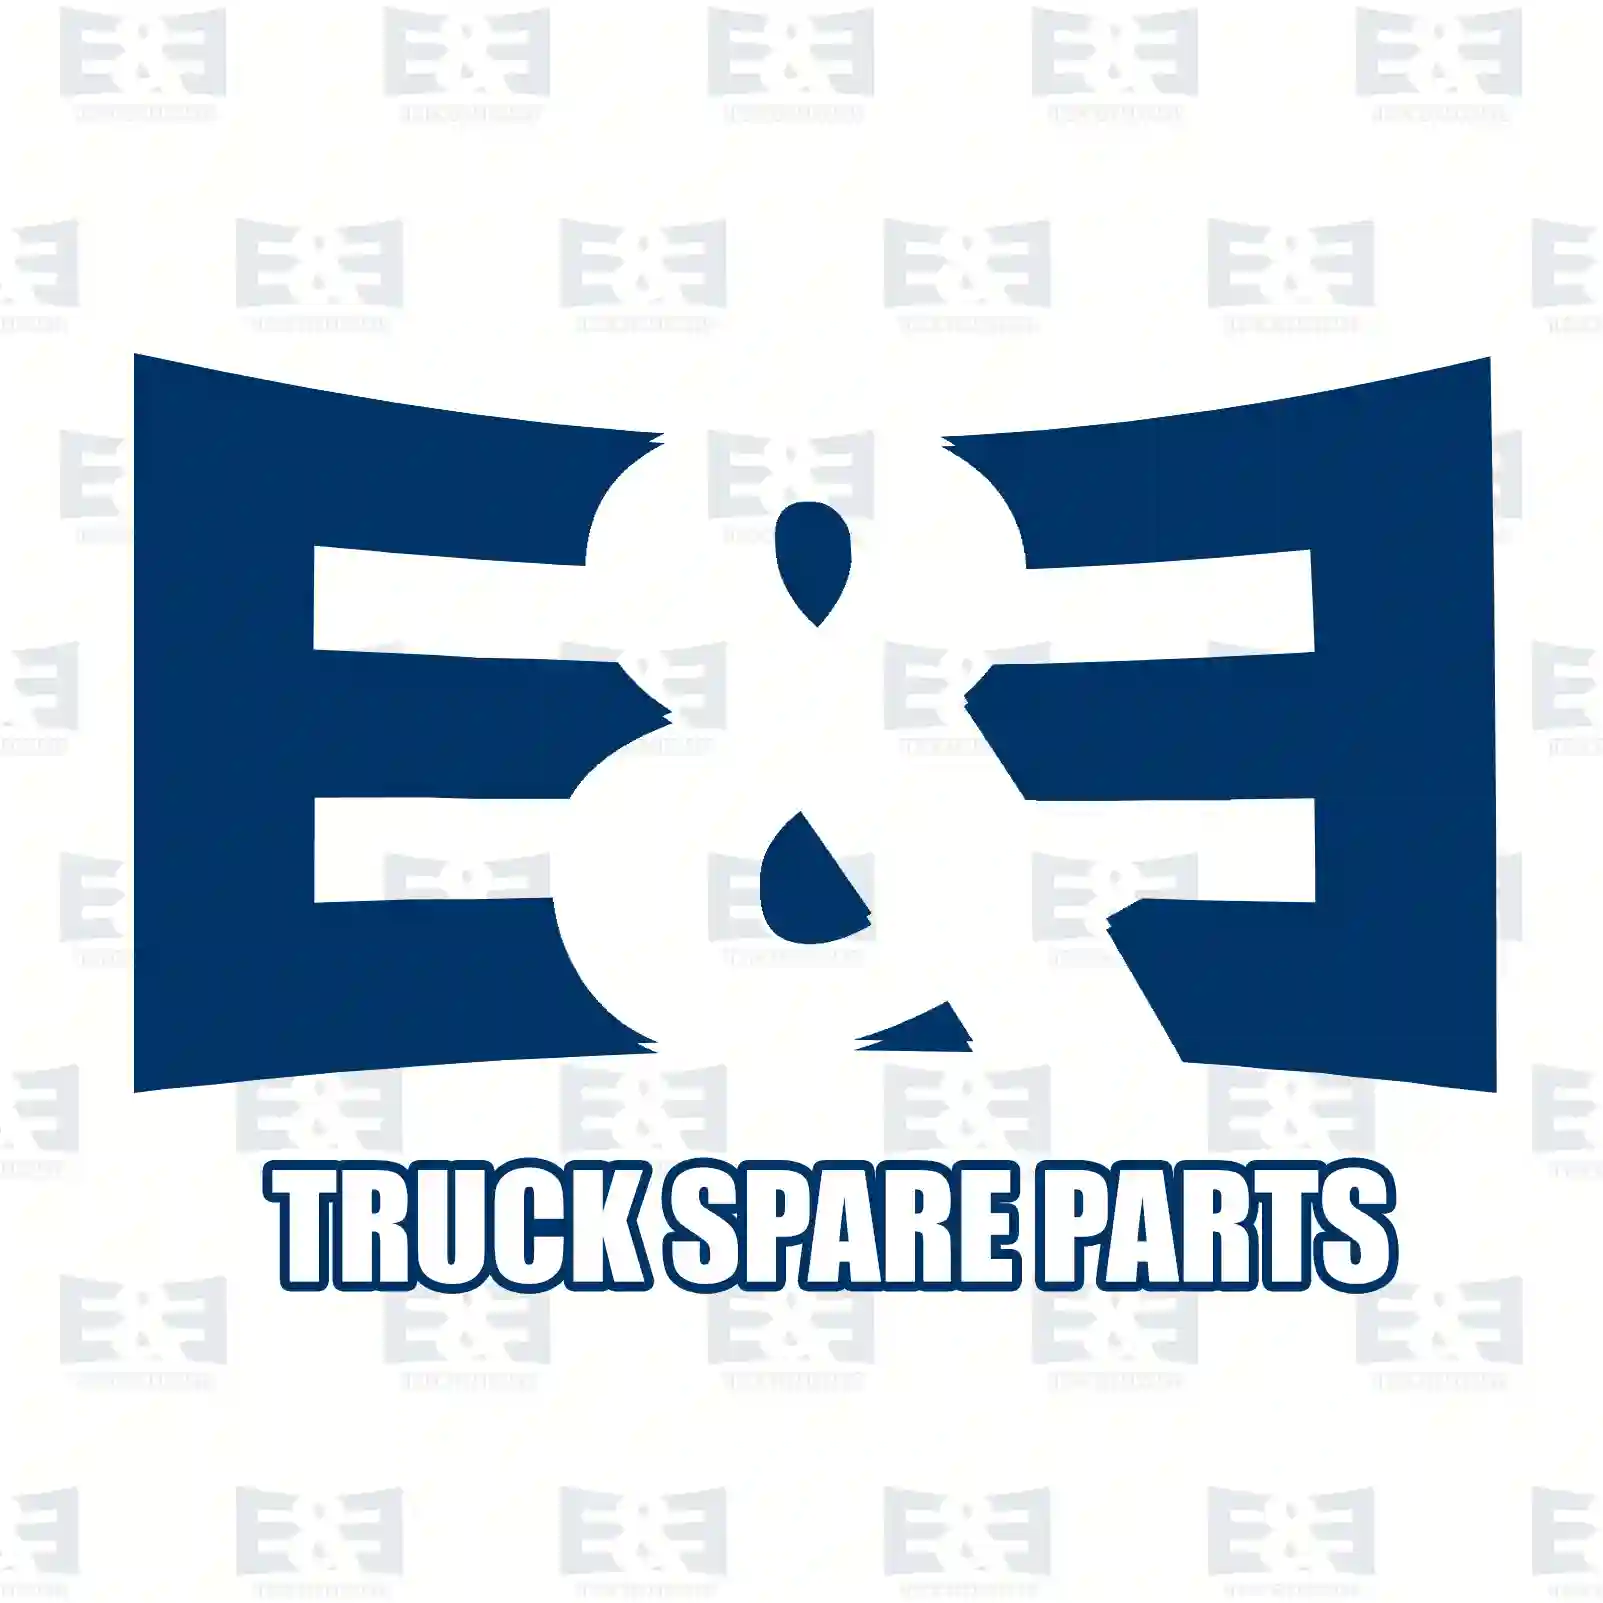 Gasket kit, crankcase, 2E2200376, 9111537, 9111866, 93160602, 93198085, 10101-00Q0F, 4403537, 4403866, 4410832, 4433417, 7701472825, 7701472827, 7701473578, 7701474373, 7701477814 ||  2E2200376 E&E Truck Spare Parts | Truck Spare Parts, Auotomotive Spare Parts Gasket kit, crankcase, 2E2200376, 9111537, 9111866, 93160602, 93198085, 10101-00Q0F, 4403537, 4403866, 4410832, 4433417, 7701472825, 7701472827, 7701473578, 7701474373, 7701477814 ||  2E2200376 E&E Truck Spare Parts | Truck Spare Parts, Auotomotive Spare Parts